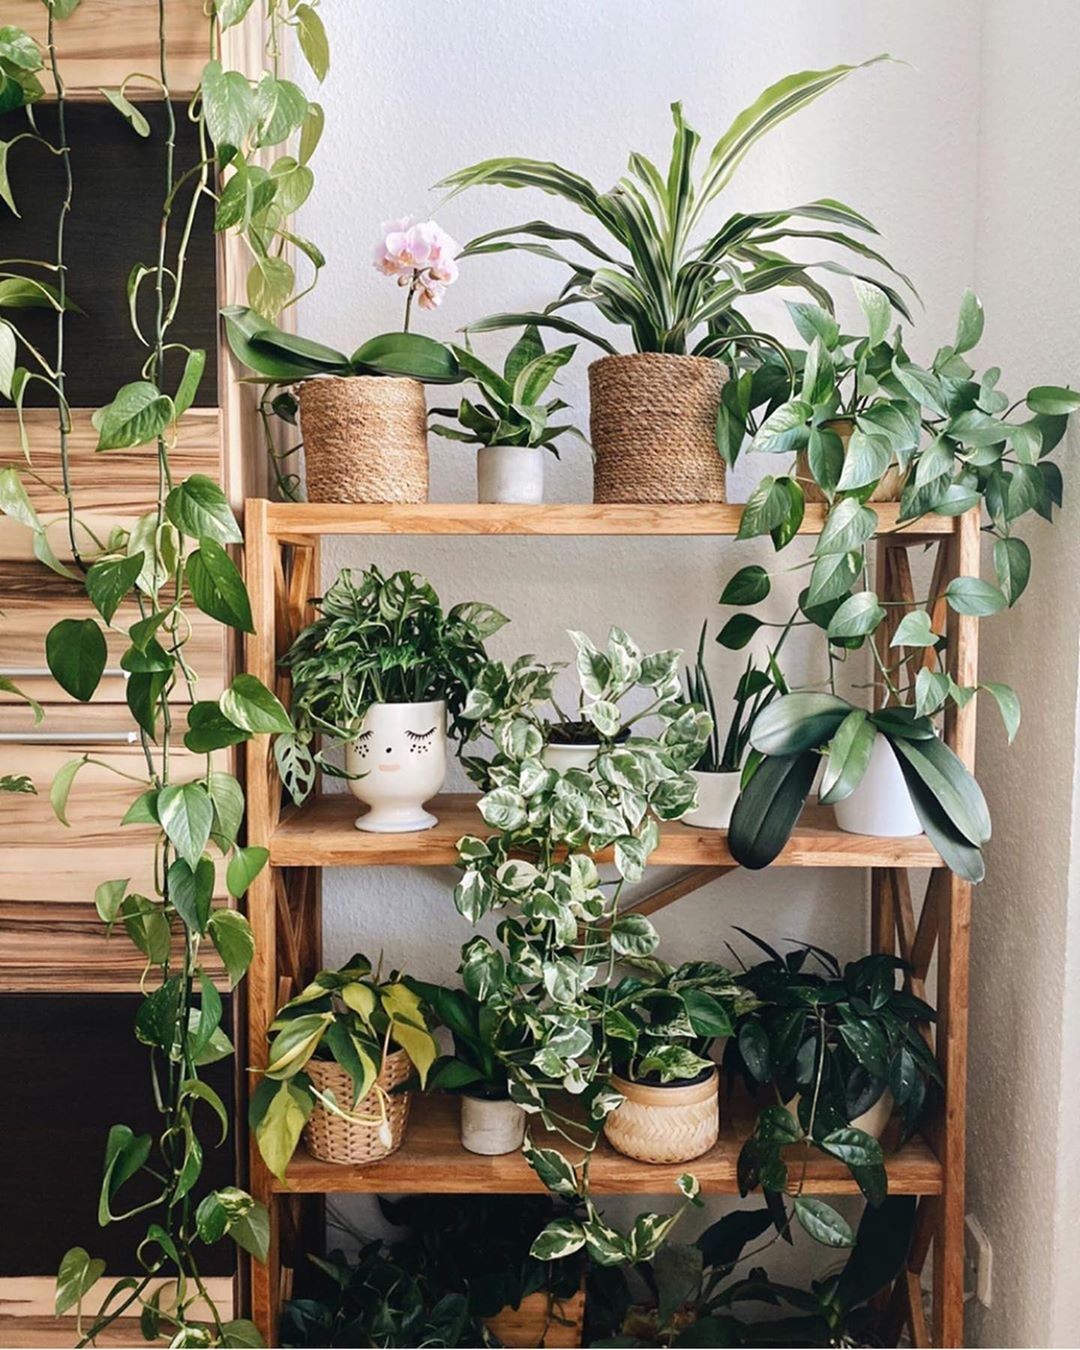 Jardim pequeno: ideias para ter plantas em casas ou apartamentos (Foto: Reprodução/Instagram/@intotheplants)